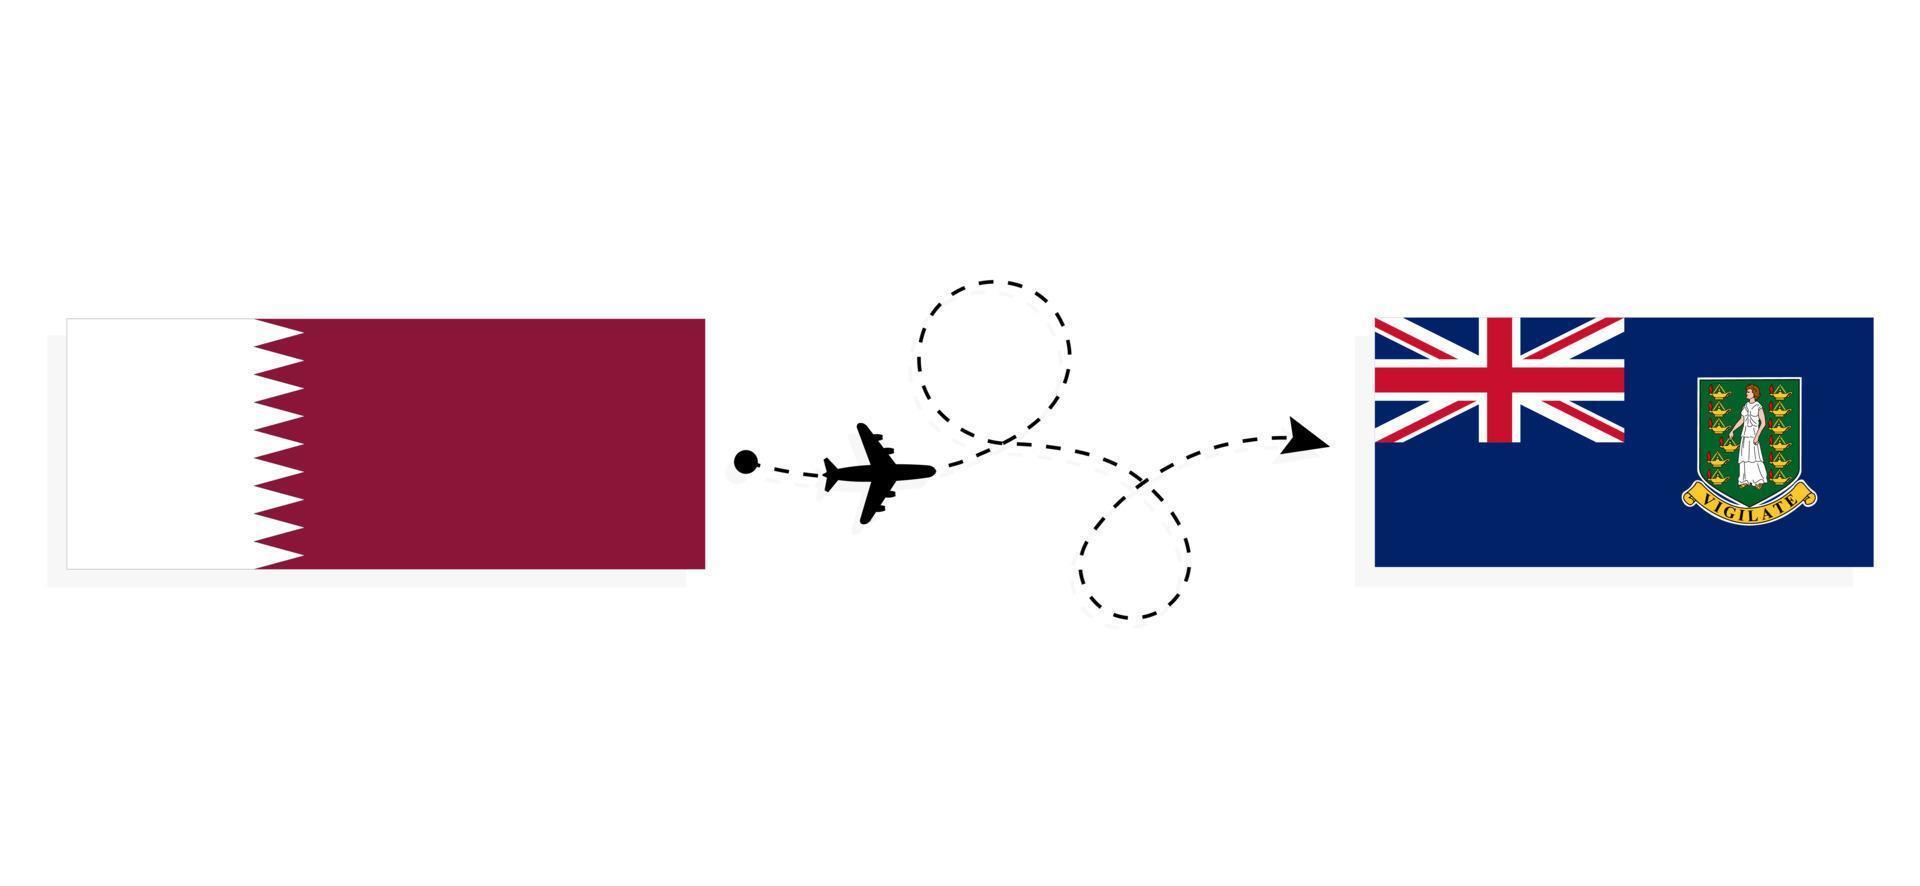 vol et voyage du qatar aux îles vierges britanniques par concept de voyage en avion de passagers vecteur